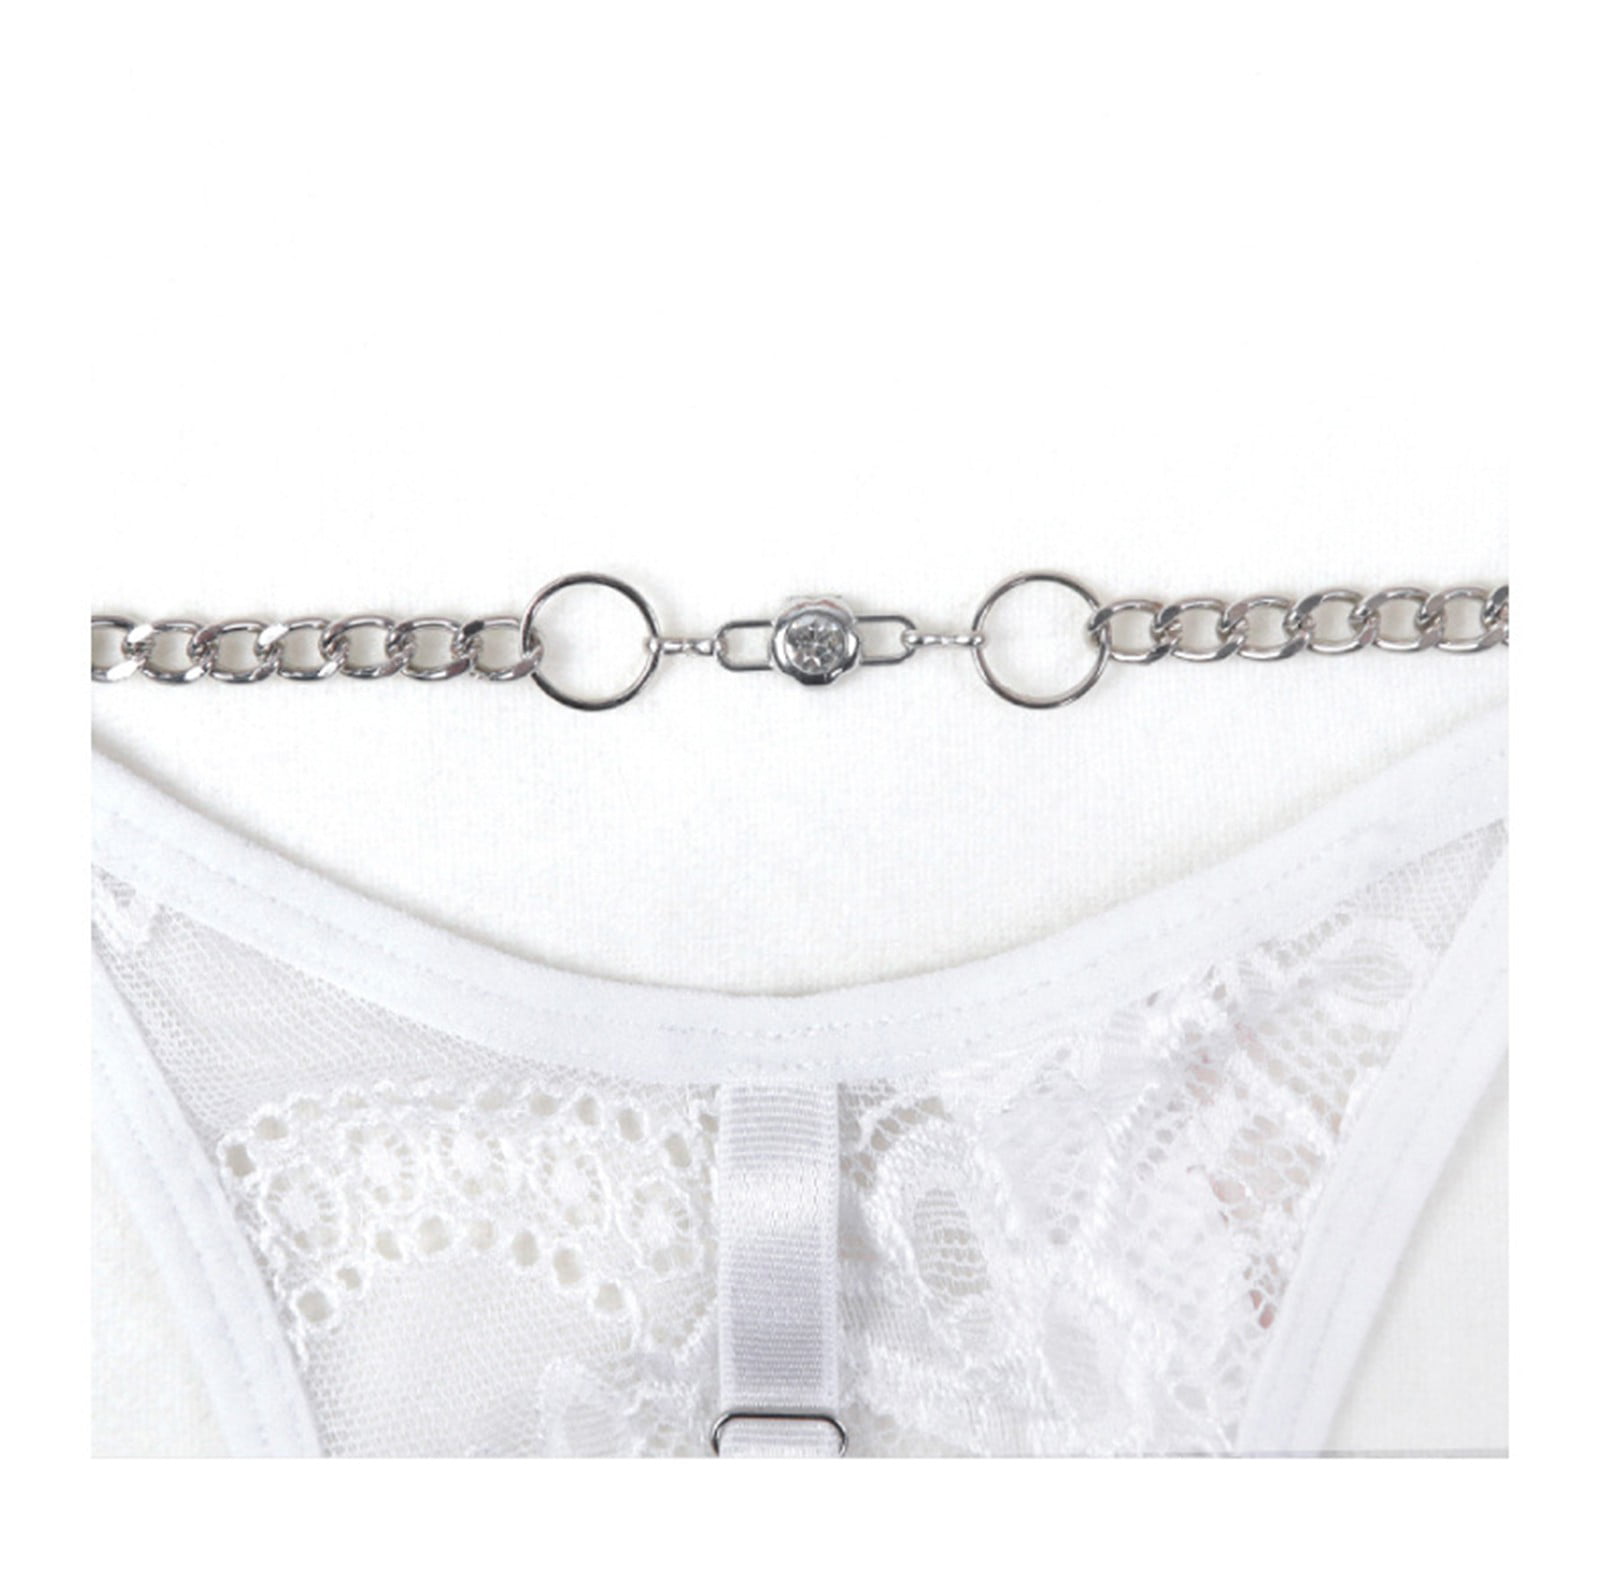 White Ladies Soft Underwear at Rs 65/piece